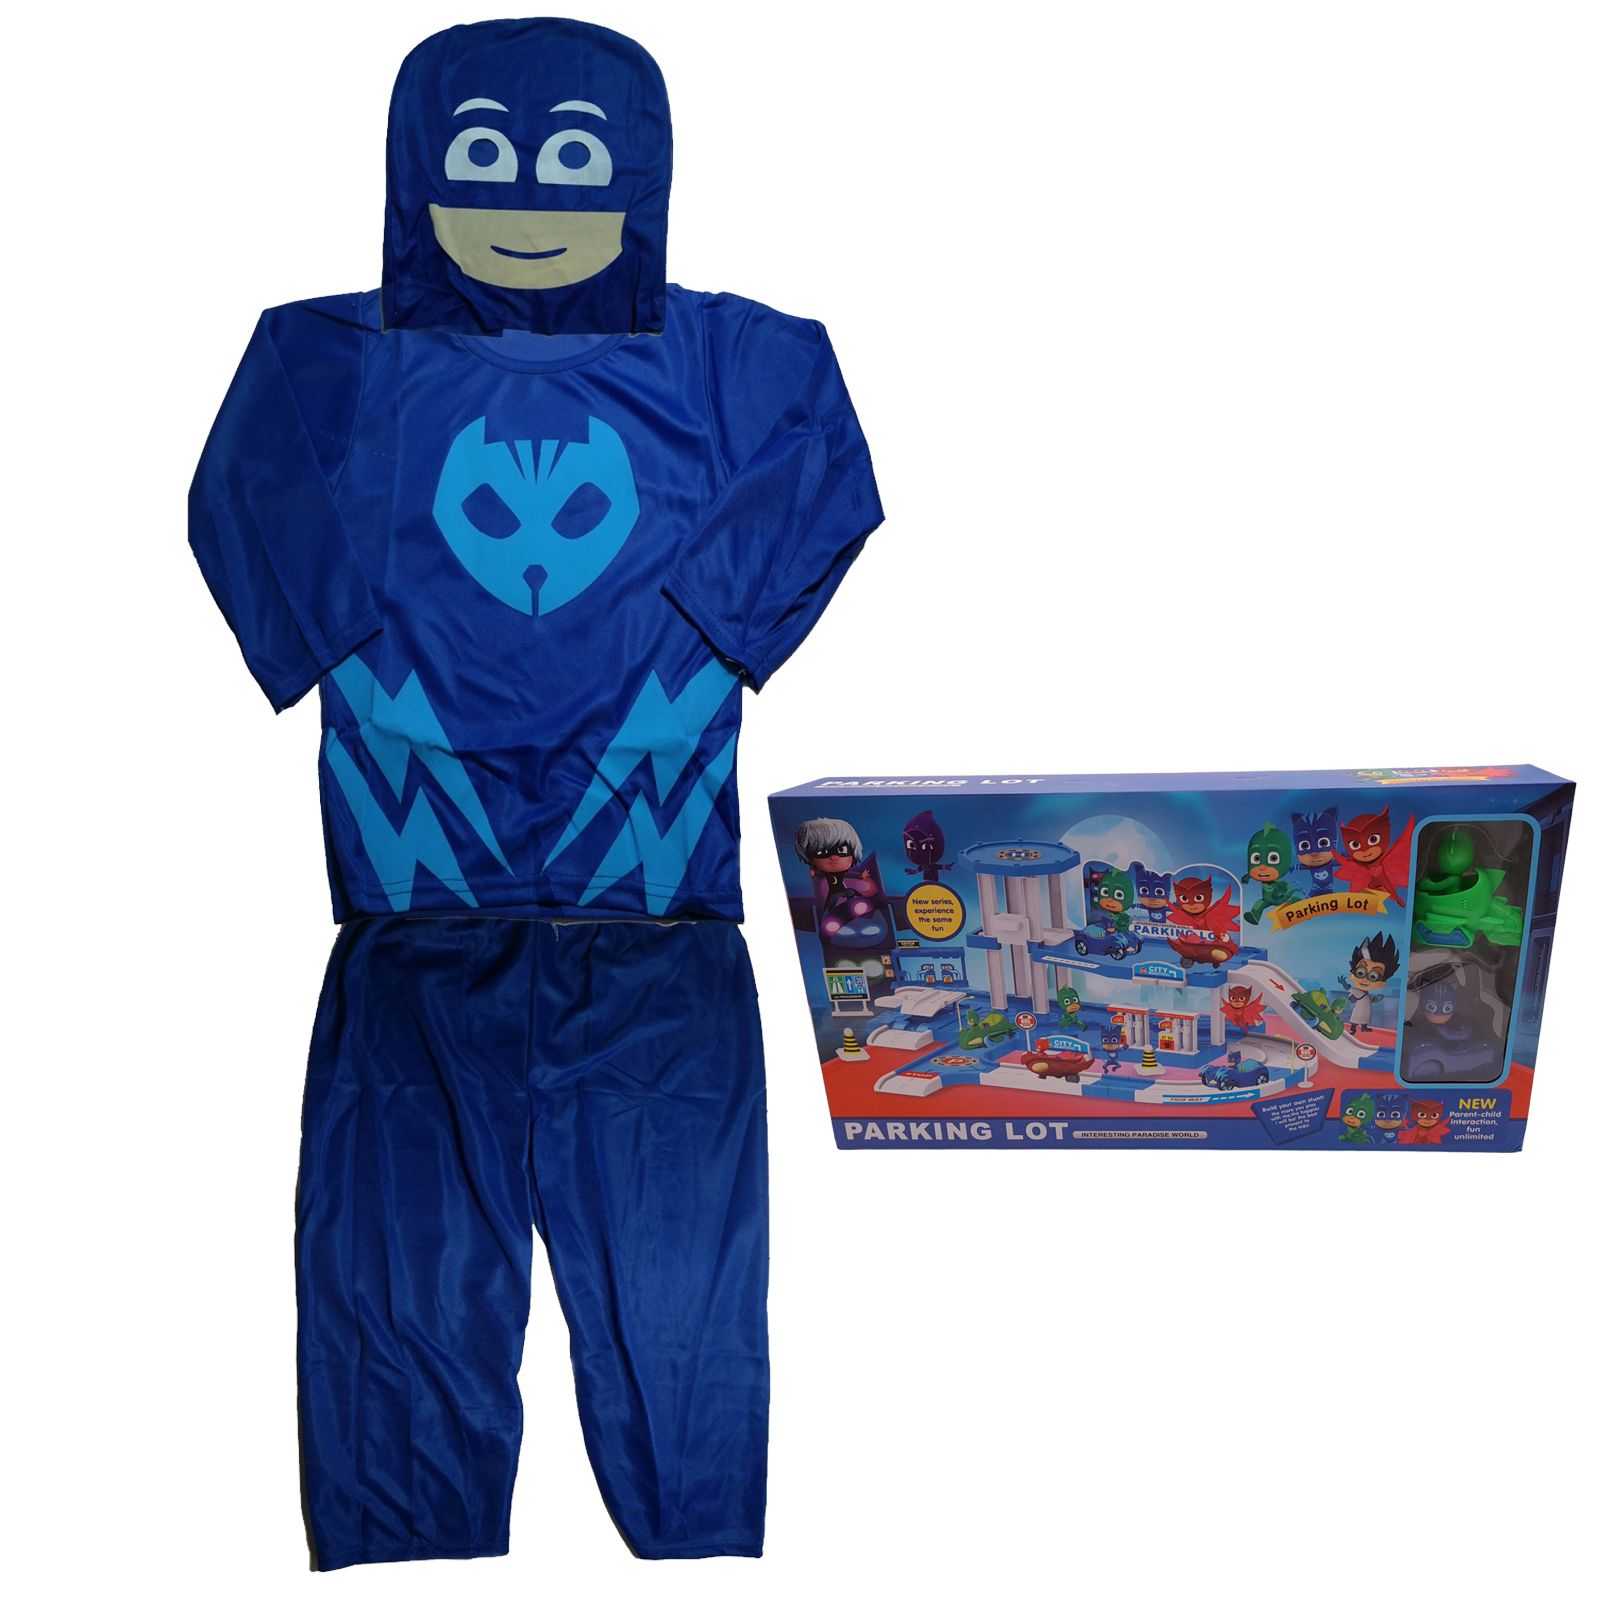 Costum pentru copii  Blue Cat, marimea 3-5 ani, jucarie inclusa